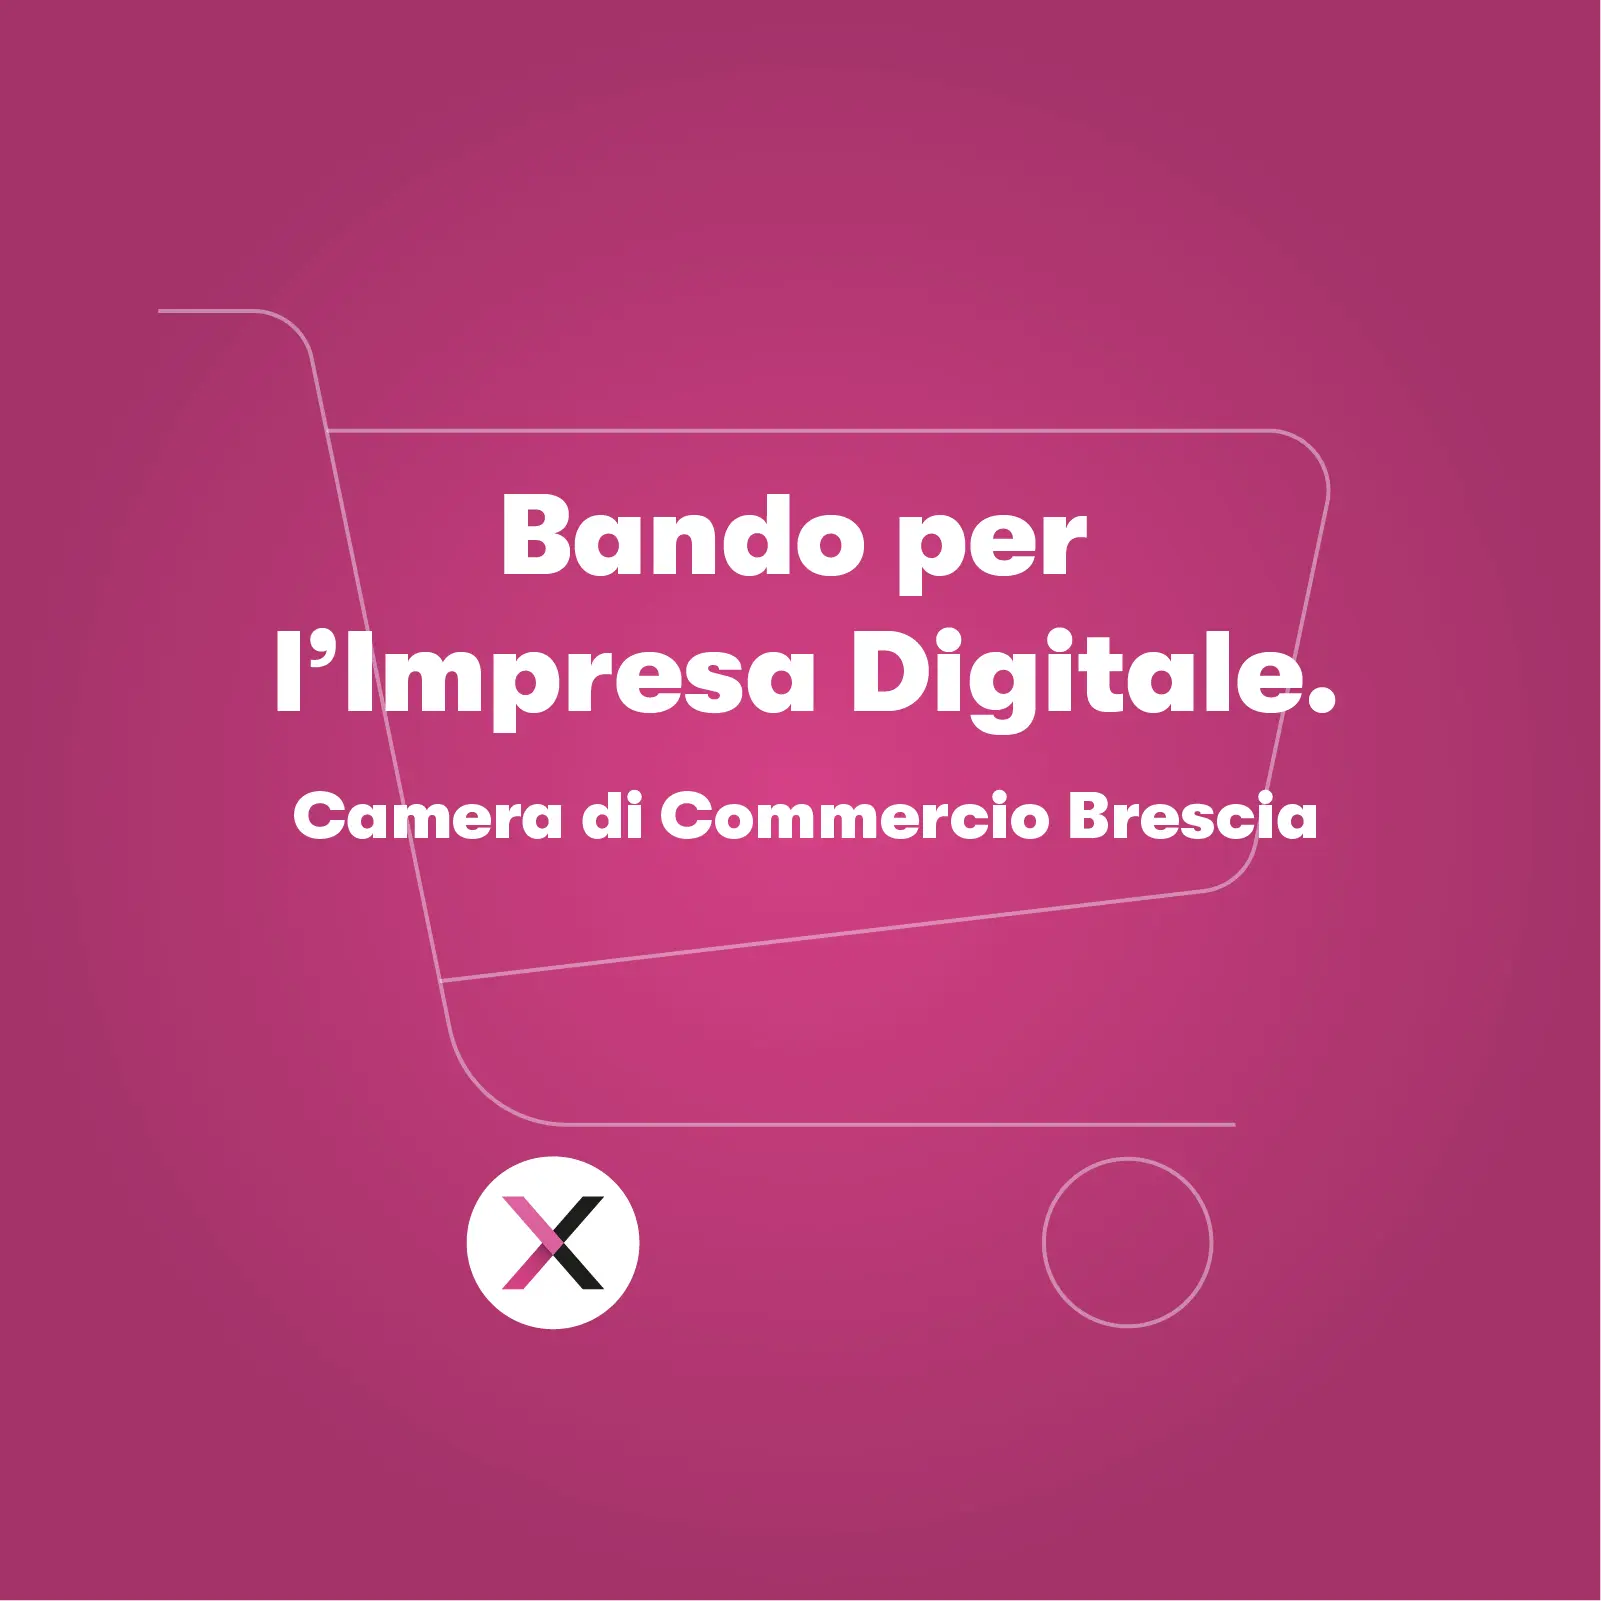 Realizza il tuo e-commerce grazie al Bando Impresa Digitale 2020 a Brescia.